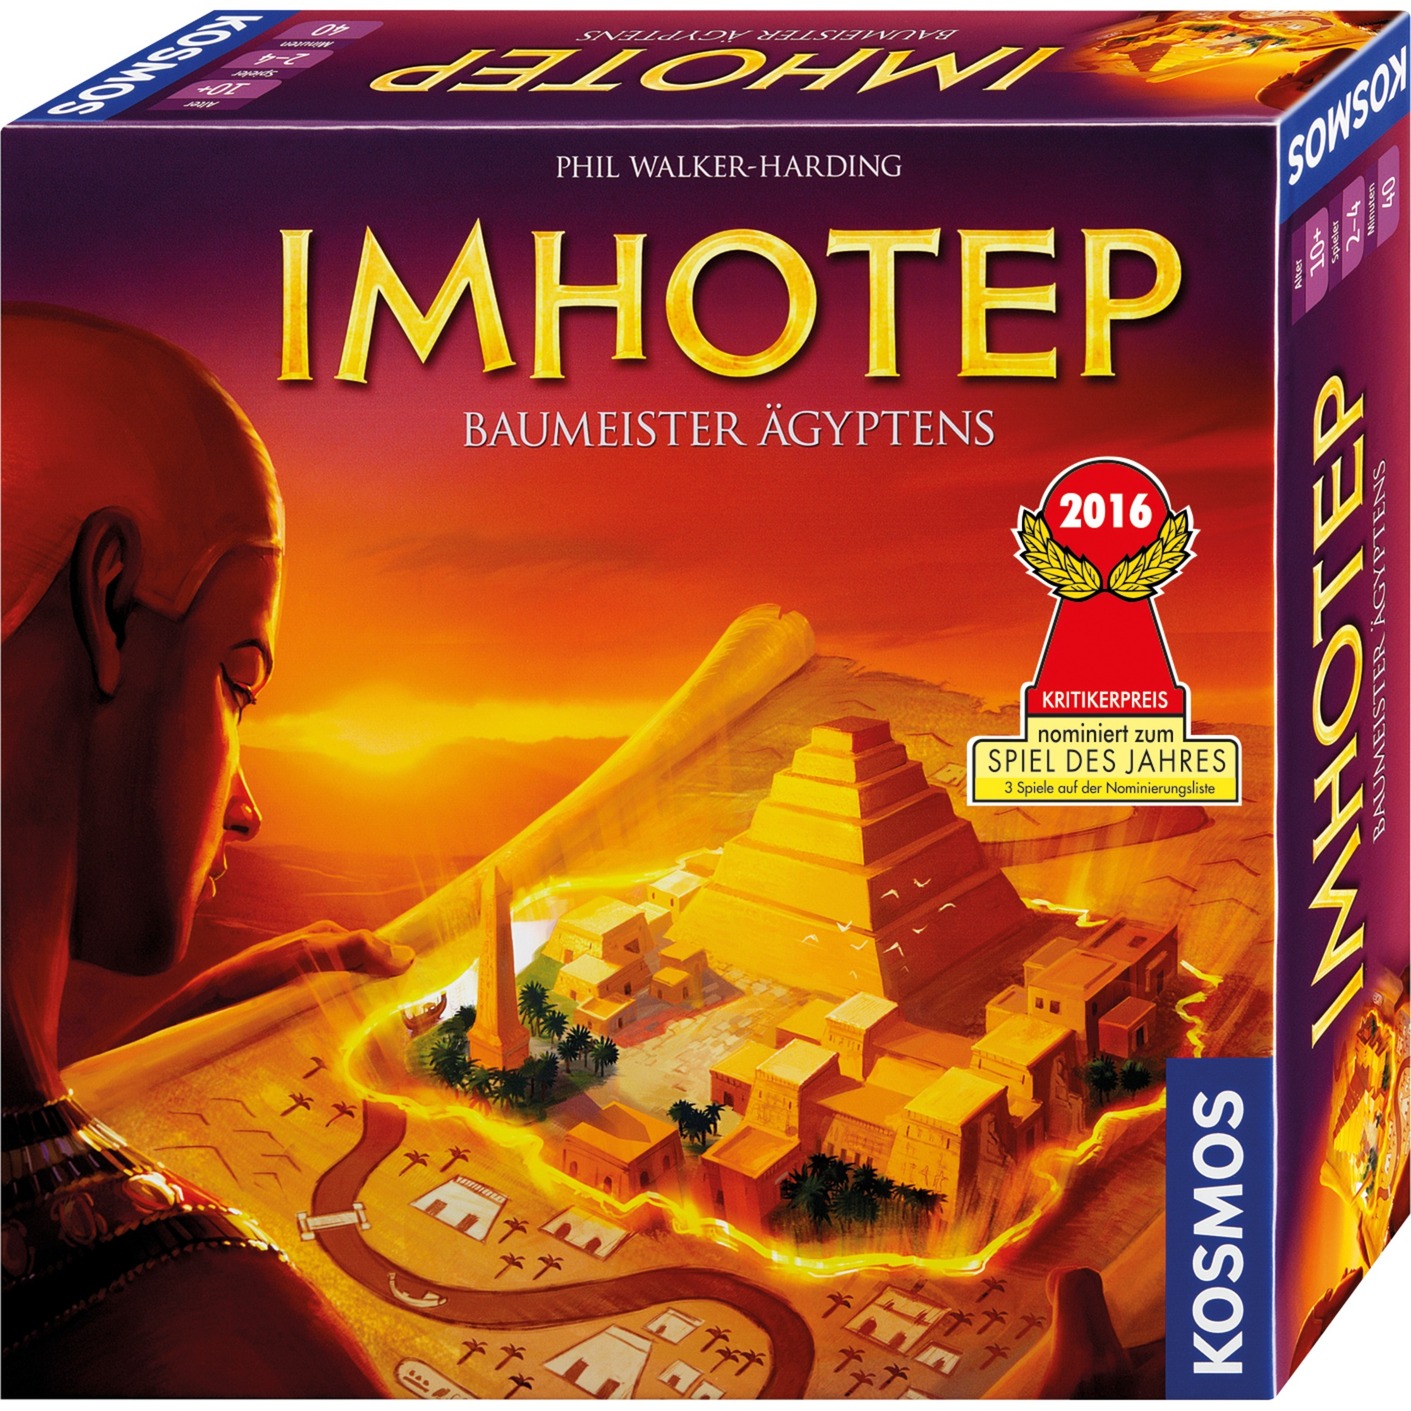 Image of Alternate - Imhotep, Brettspiel online einkaufen bei Alternate